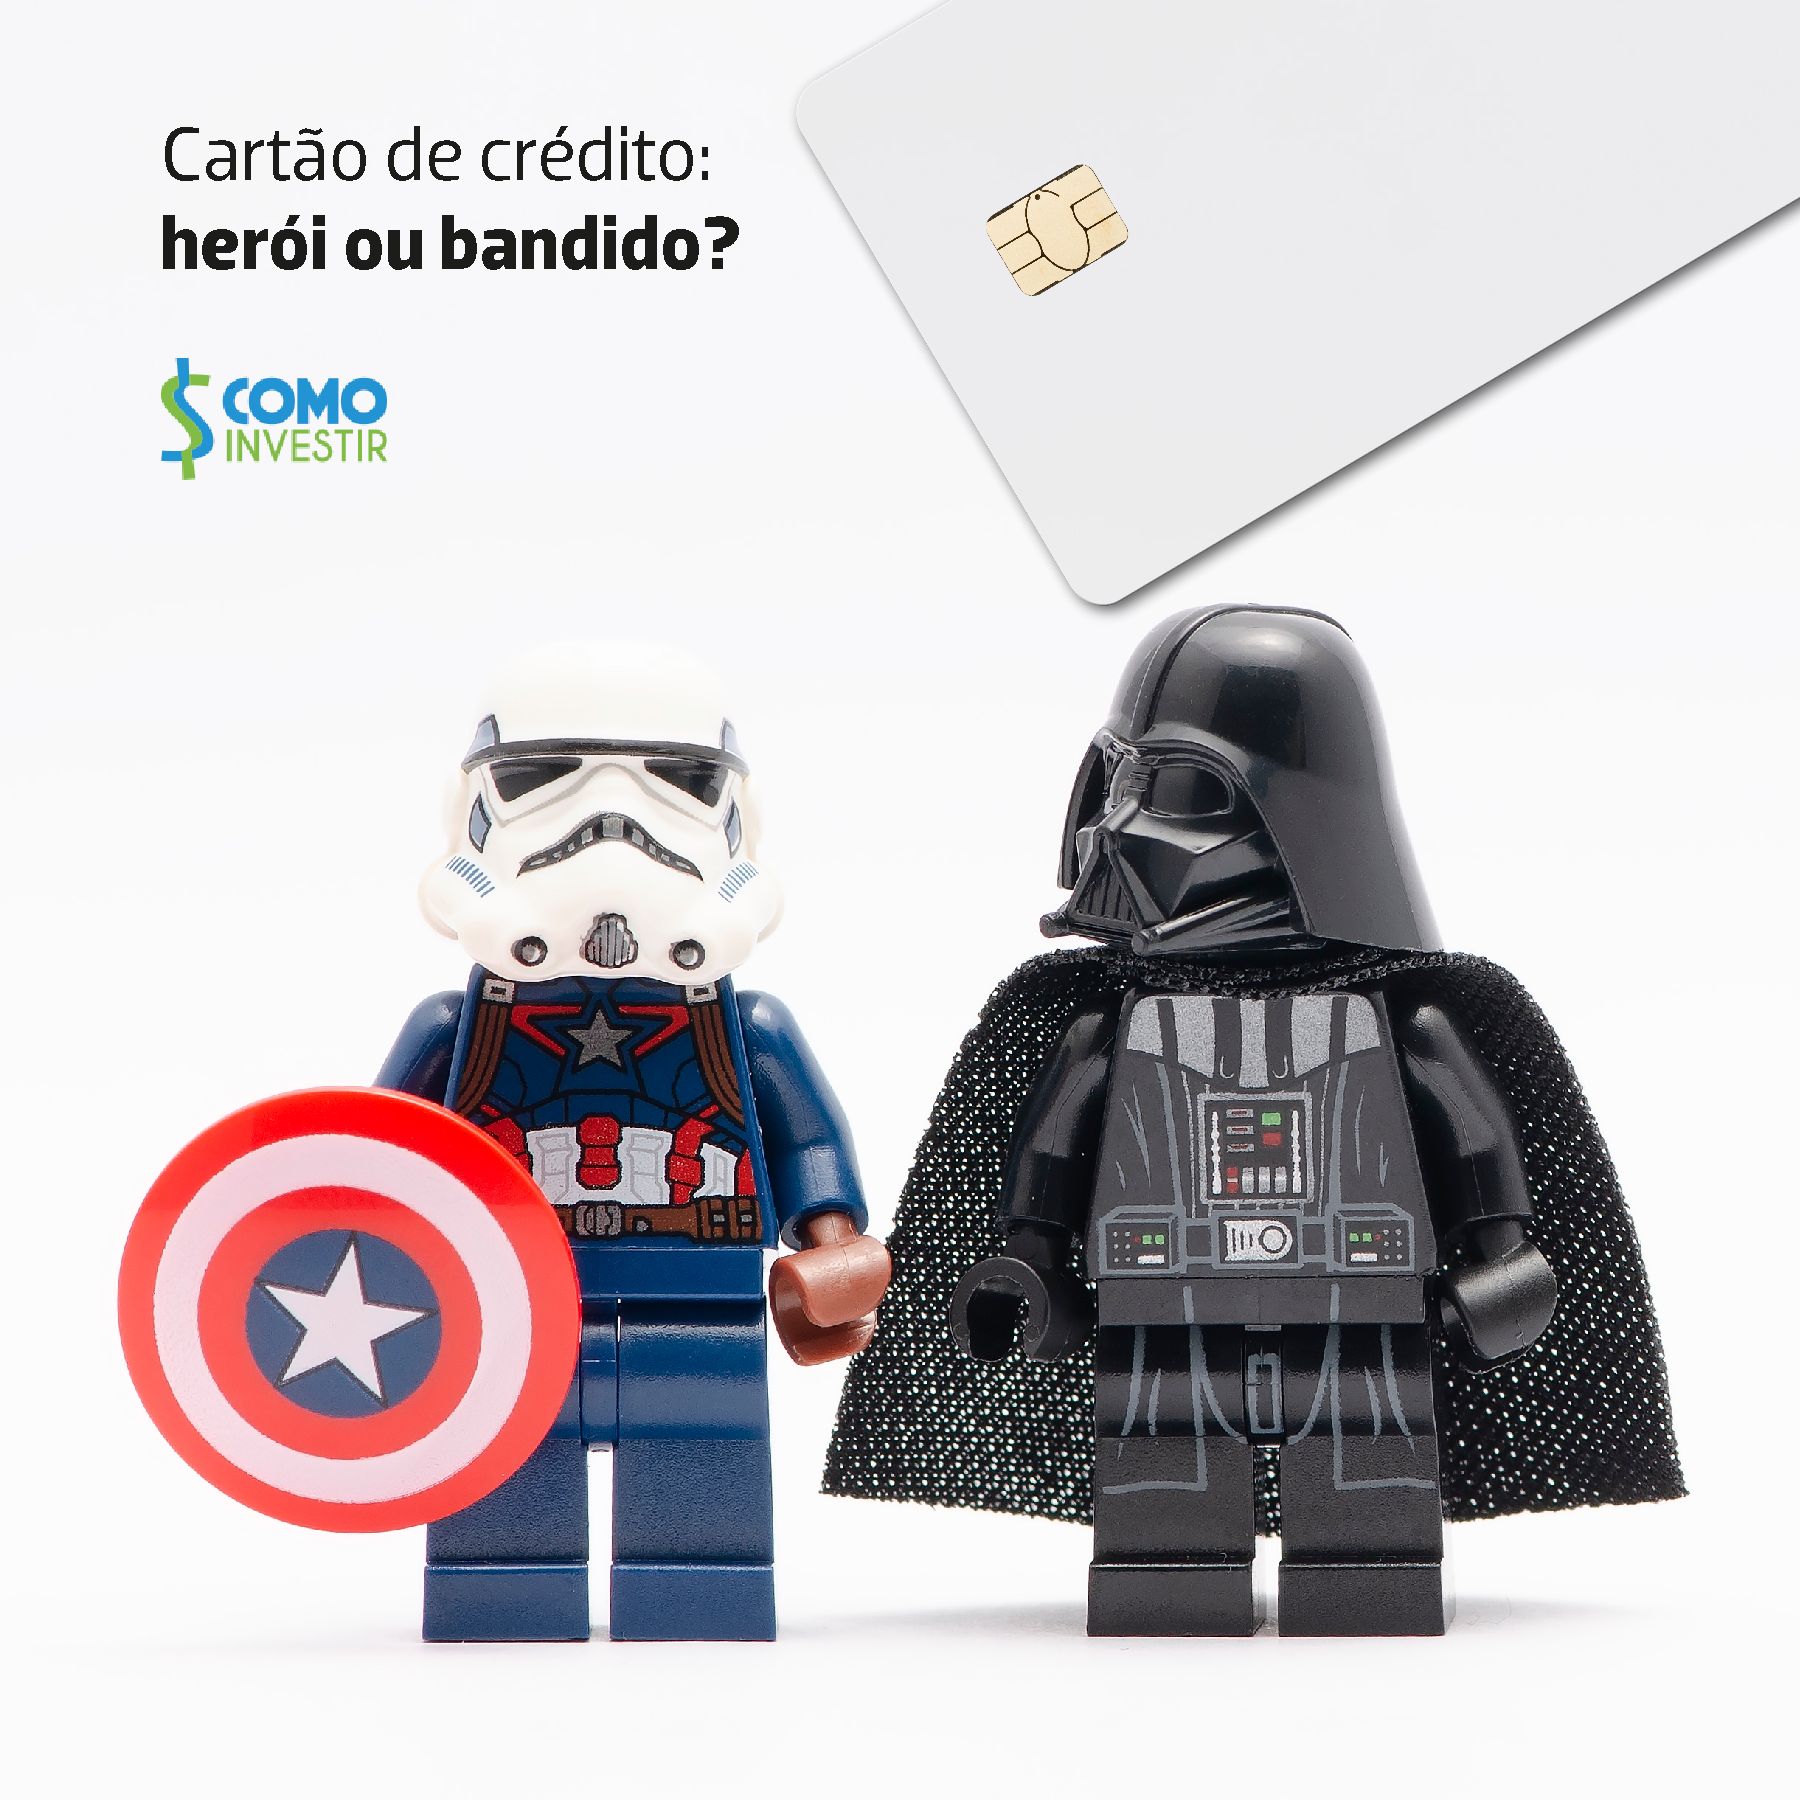 Cartão de crédito: vilão ou herói das finanças?